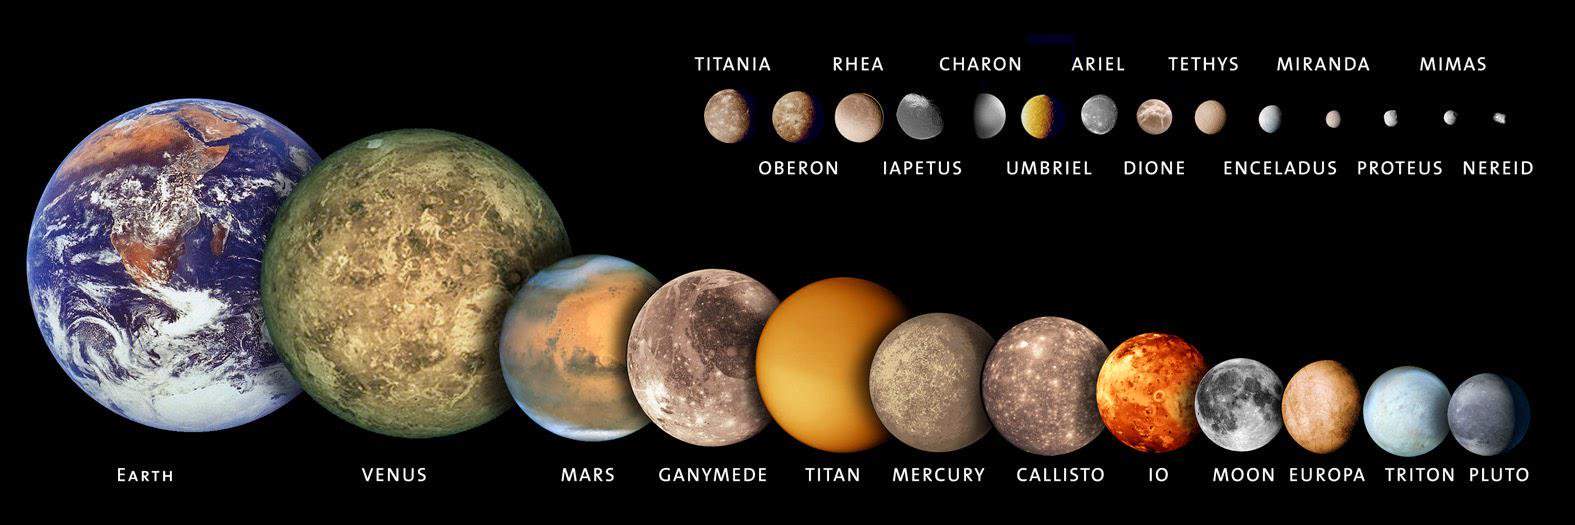 moons-solar-system.jpg